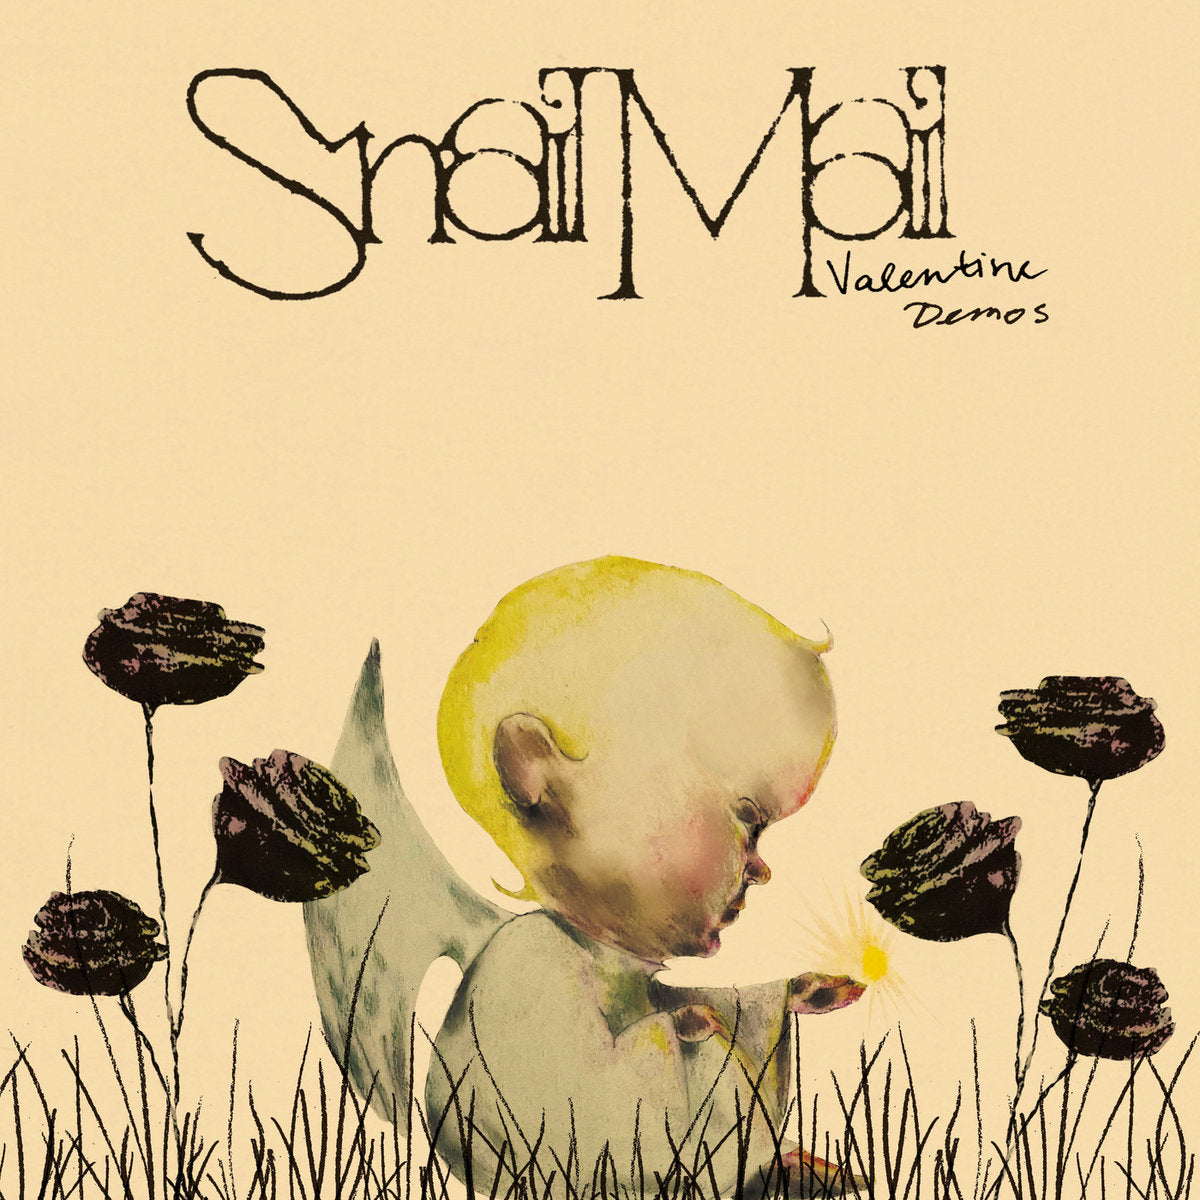 SNAIL MAIL - VALENTINE DEMOS Vinyl LP